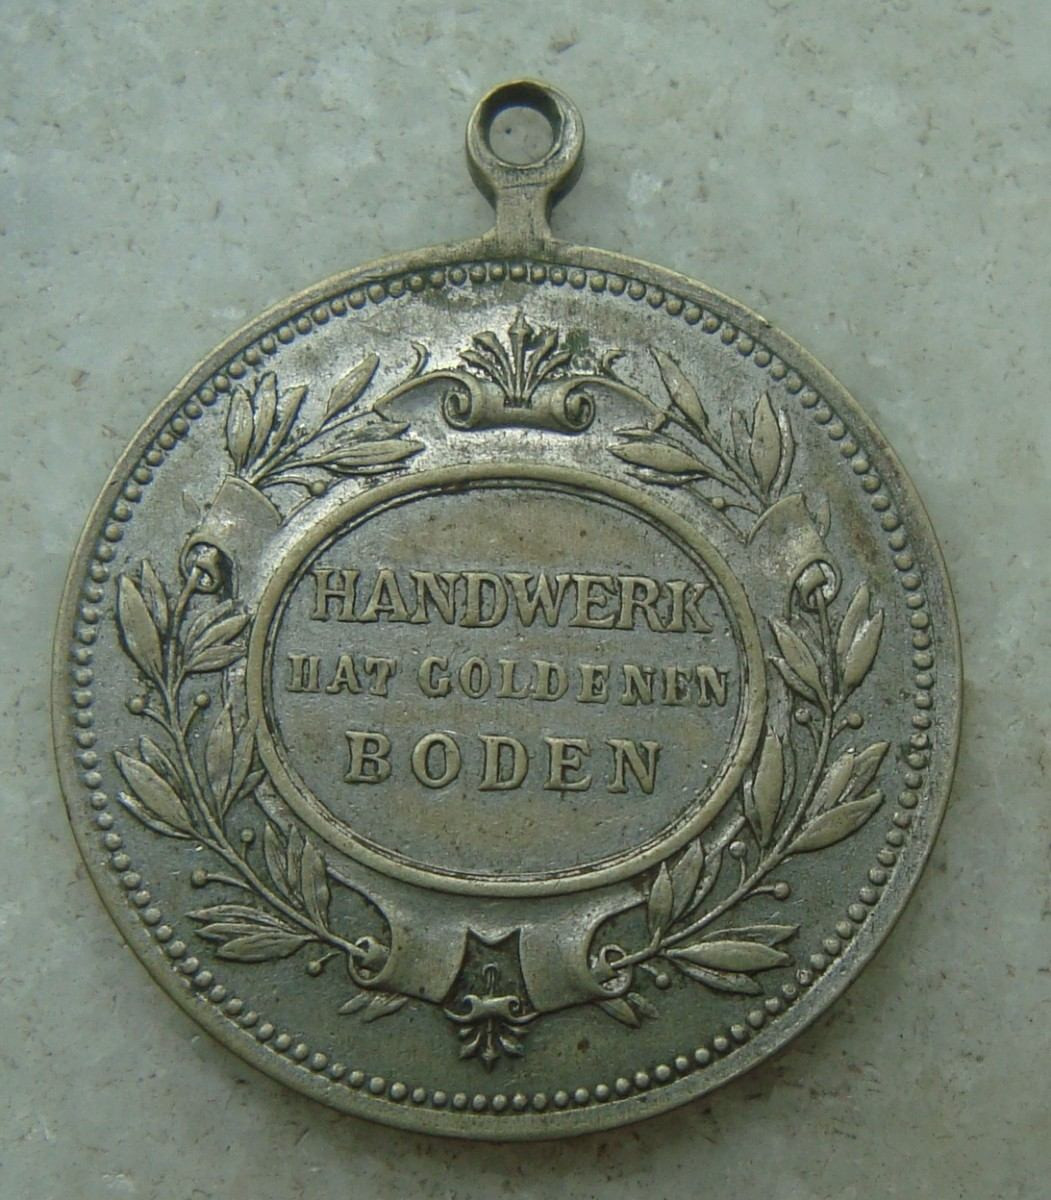 Handwerk Hat Goldenen Boden
 Medalha Alemanha Handwerk Hat Goldenen Boden 28mm Latão